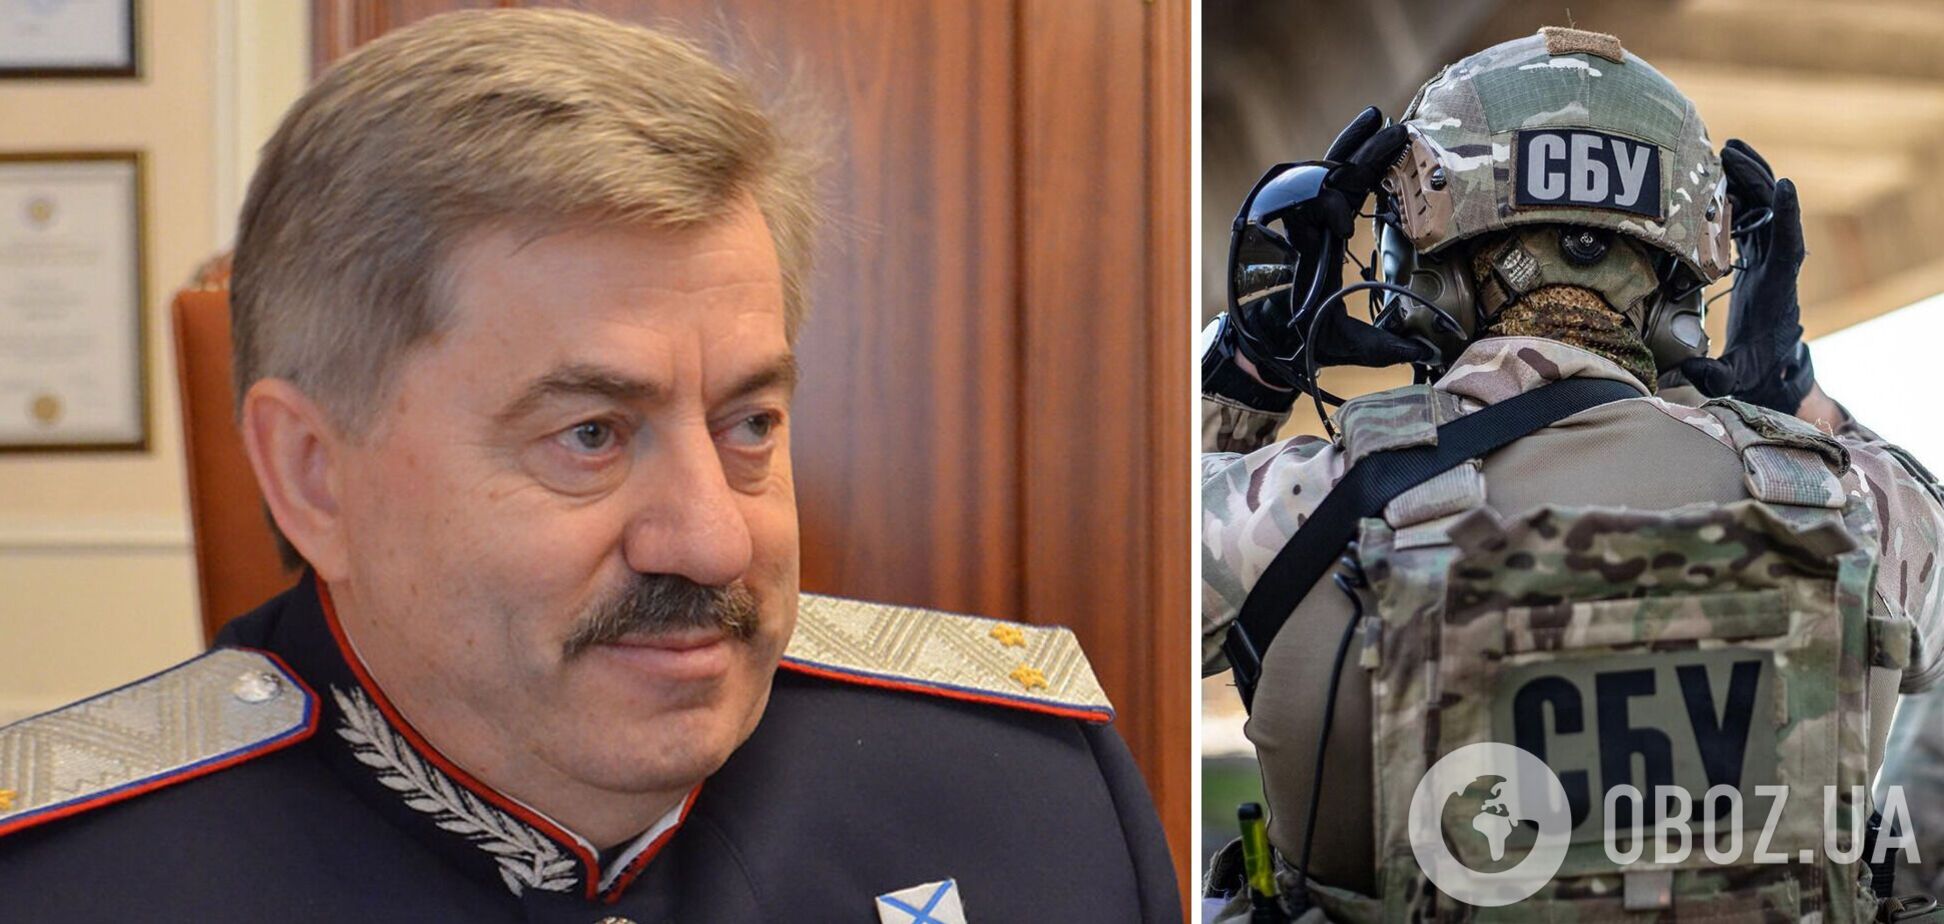 СБУ сообщила о подозрении депутату Госдумы РФ, пиарившемуся во время артобстрела Луганщины